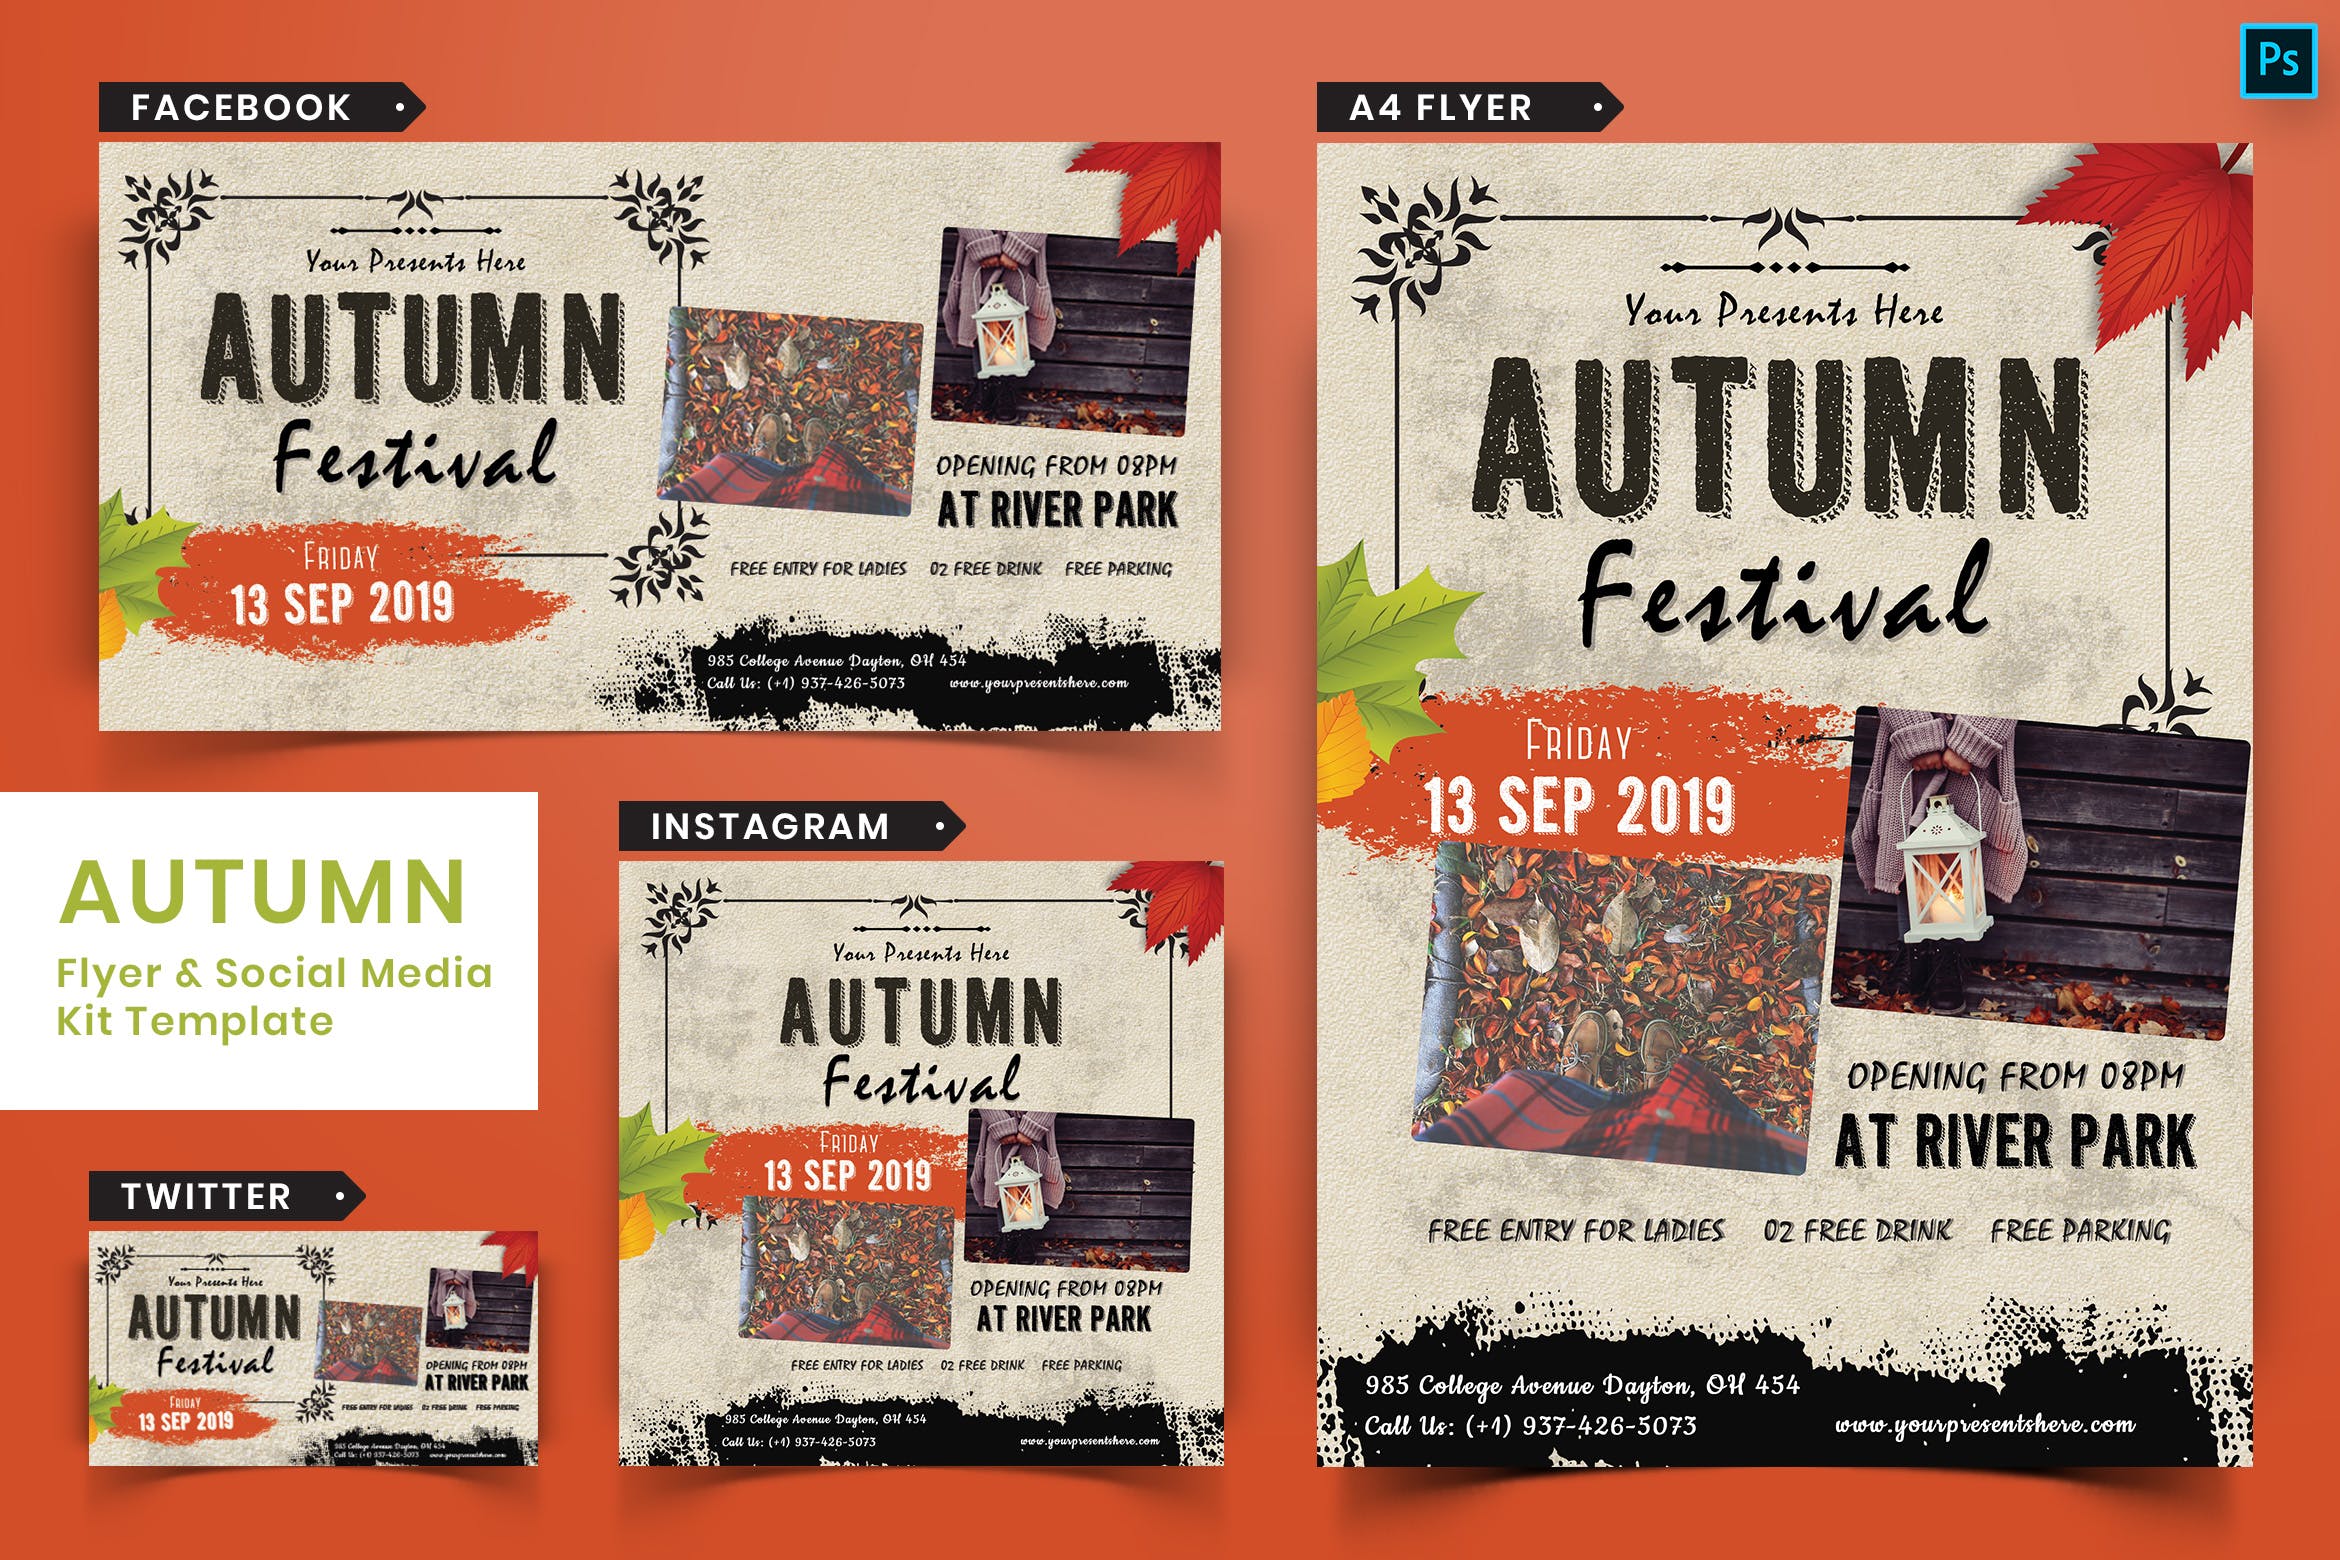 复古设计风格秋季节日主题传单设计和社交媒体素材包04 Autumn Festival Flyer & Social Media Pack-04插图